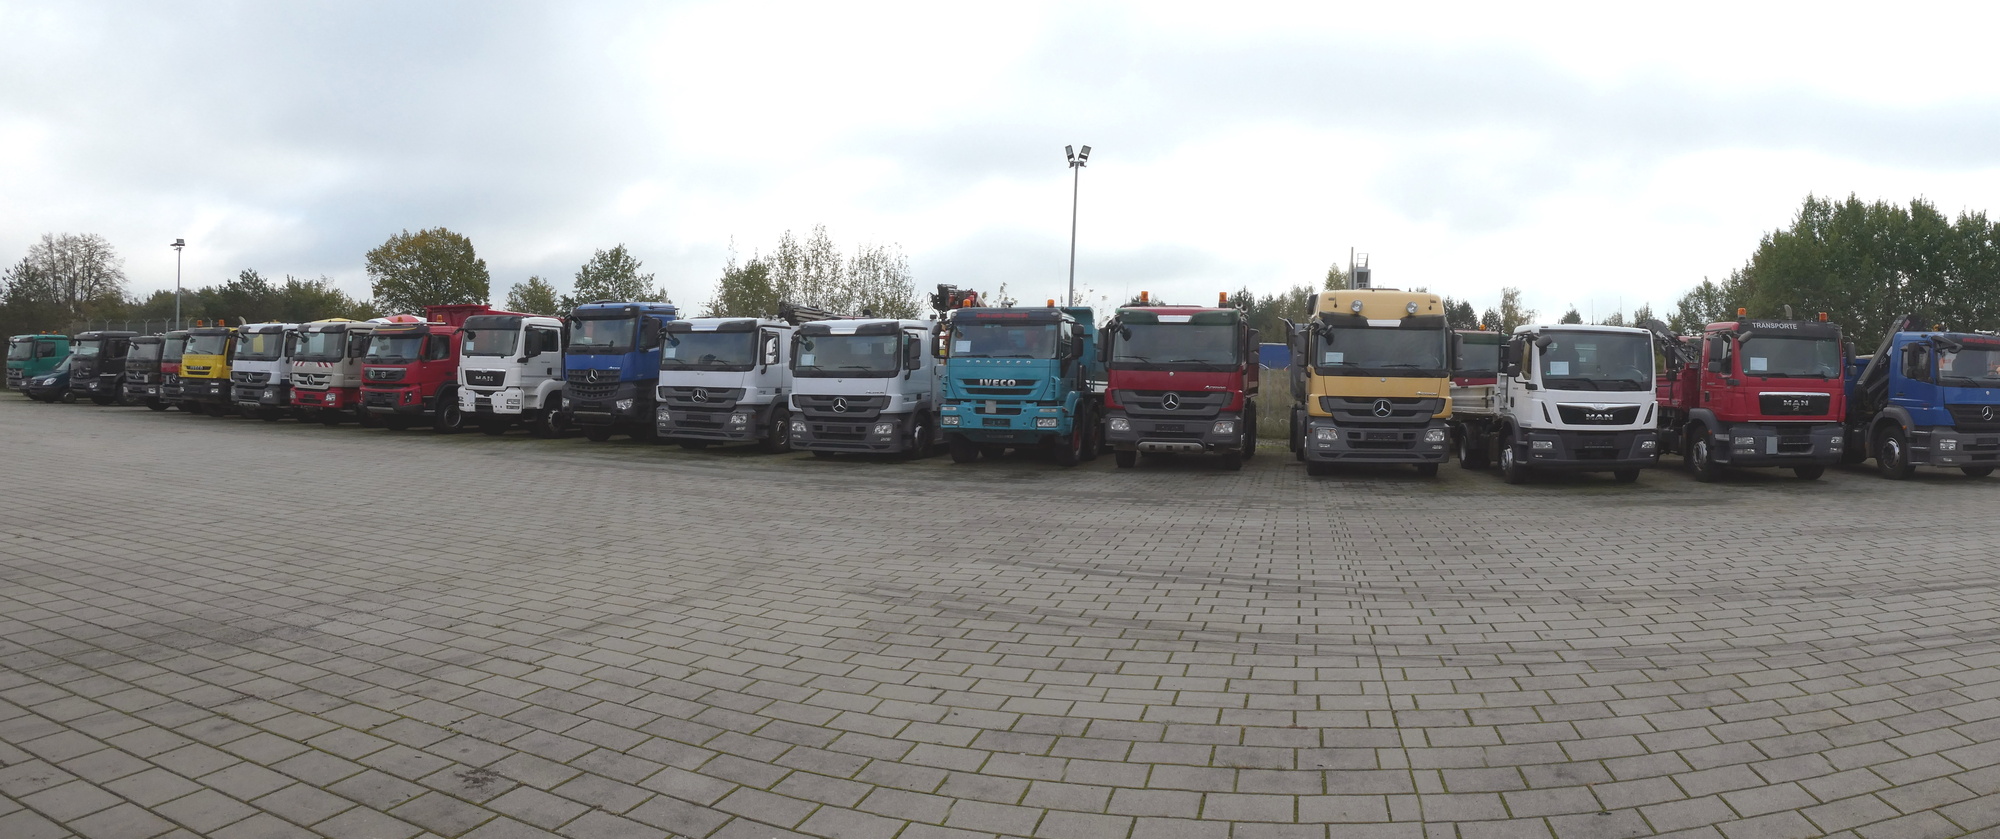 Henze Truck GmbH undefined: foto 1